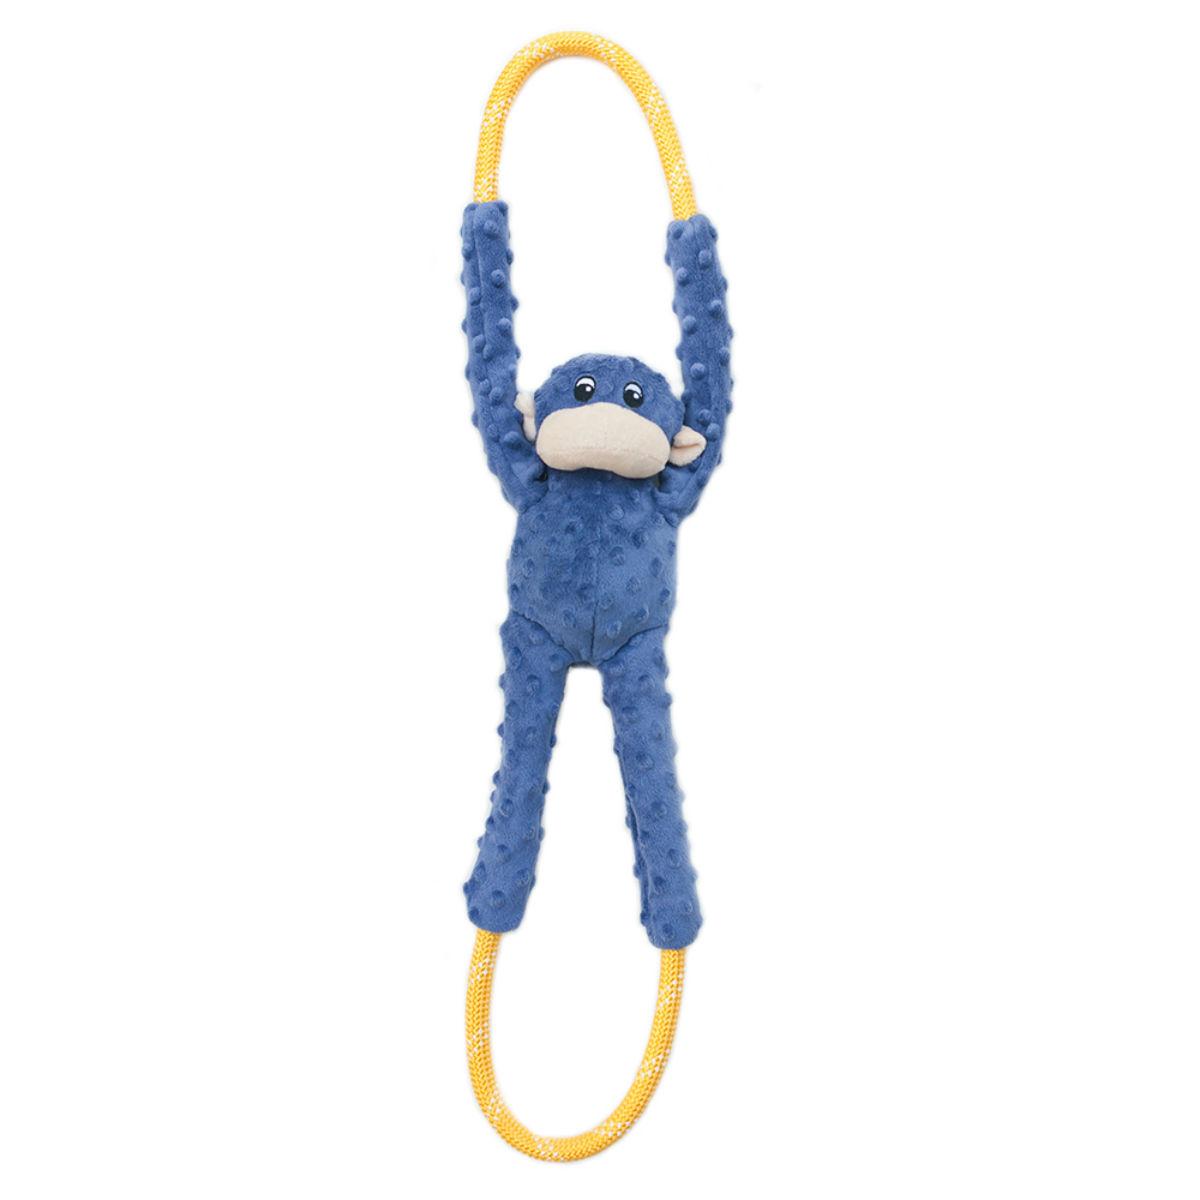 ZippyPaws Monkey RopeTugz Dog Toy - Blue